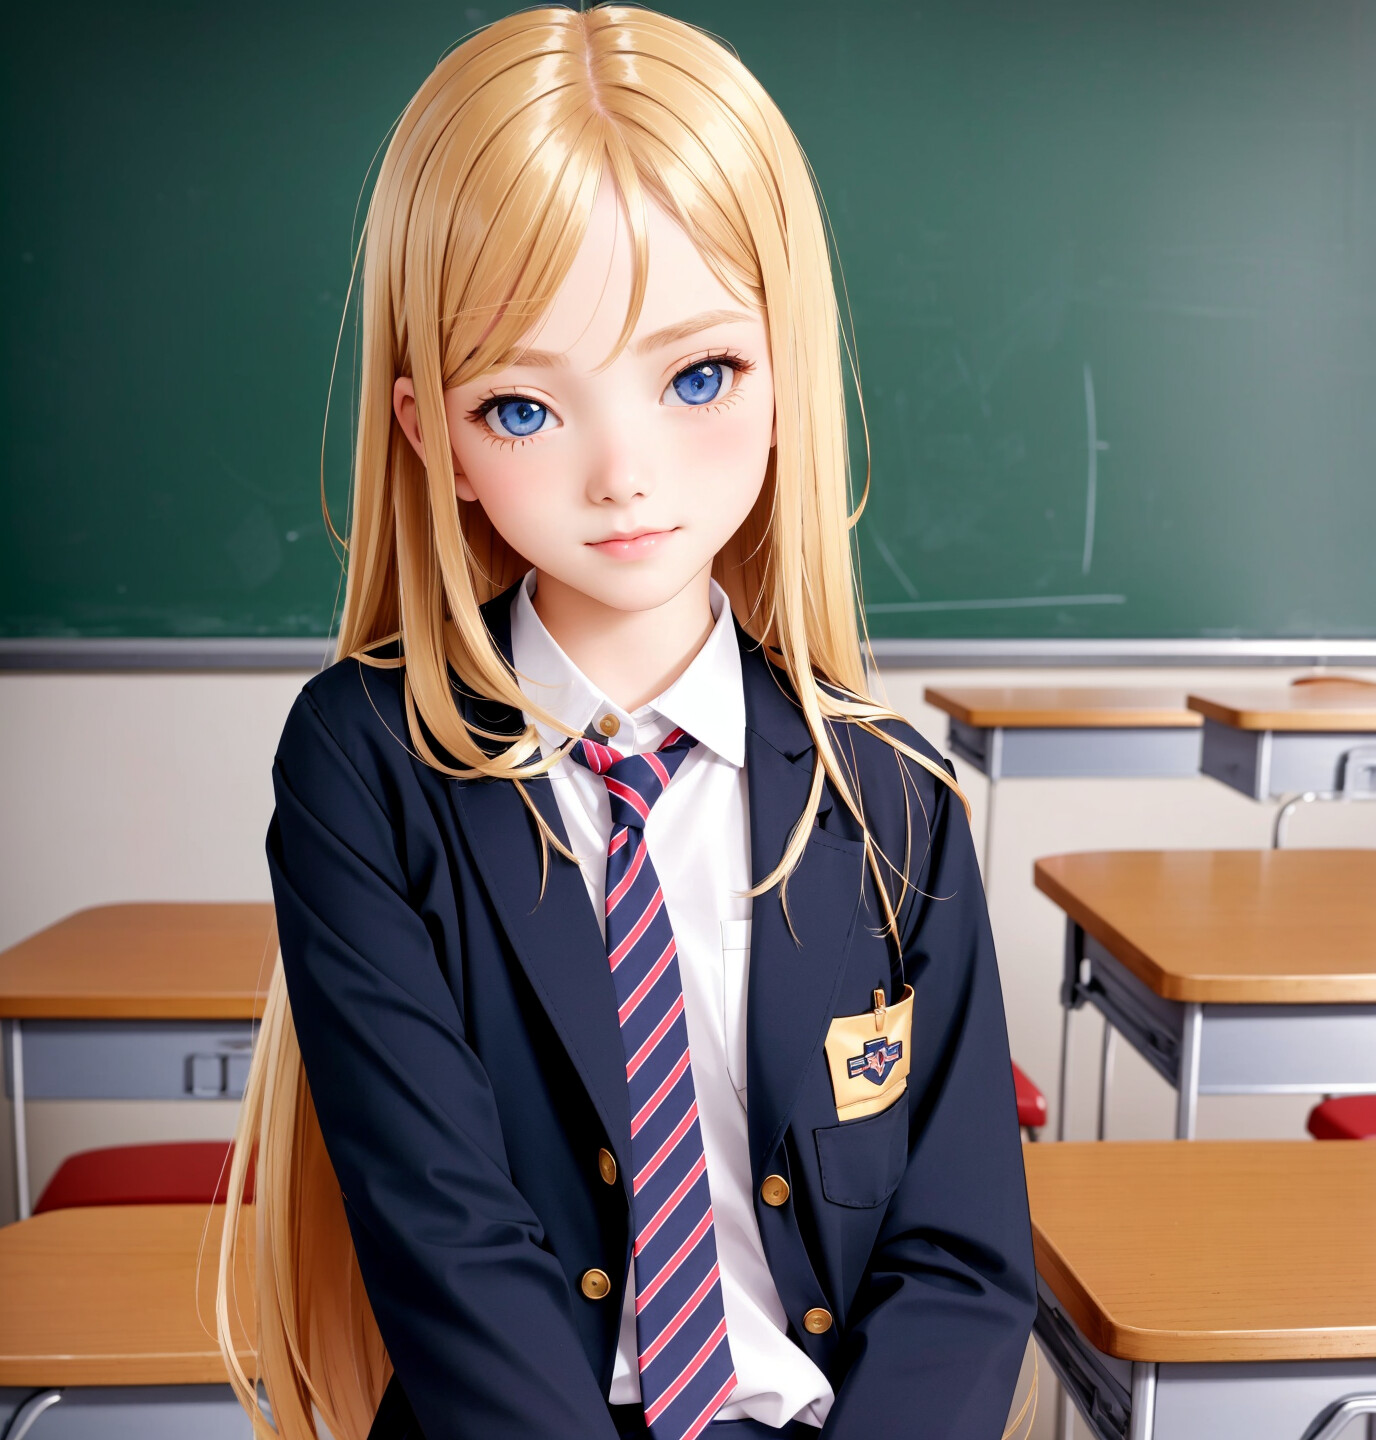 ArtStation - Cute schoolgirl